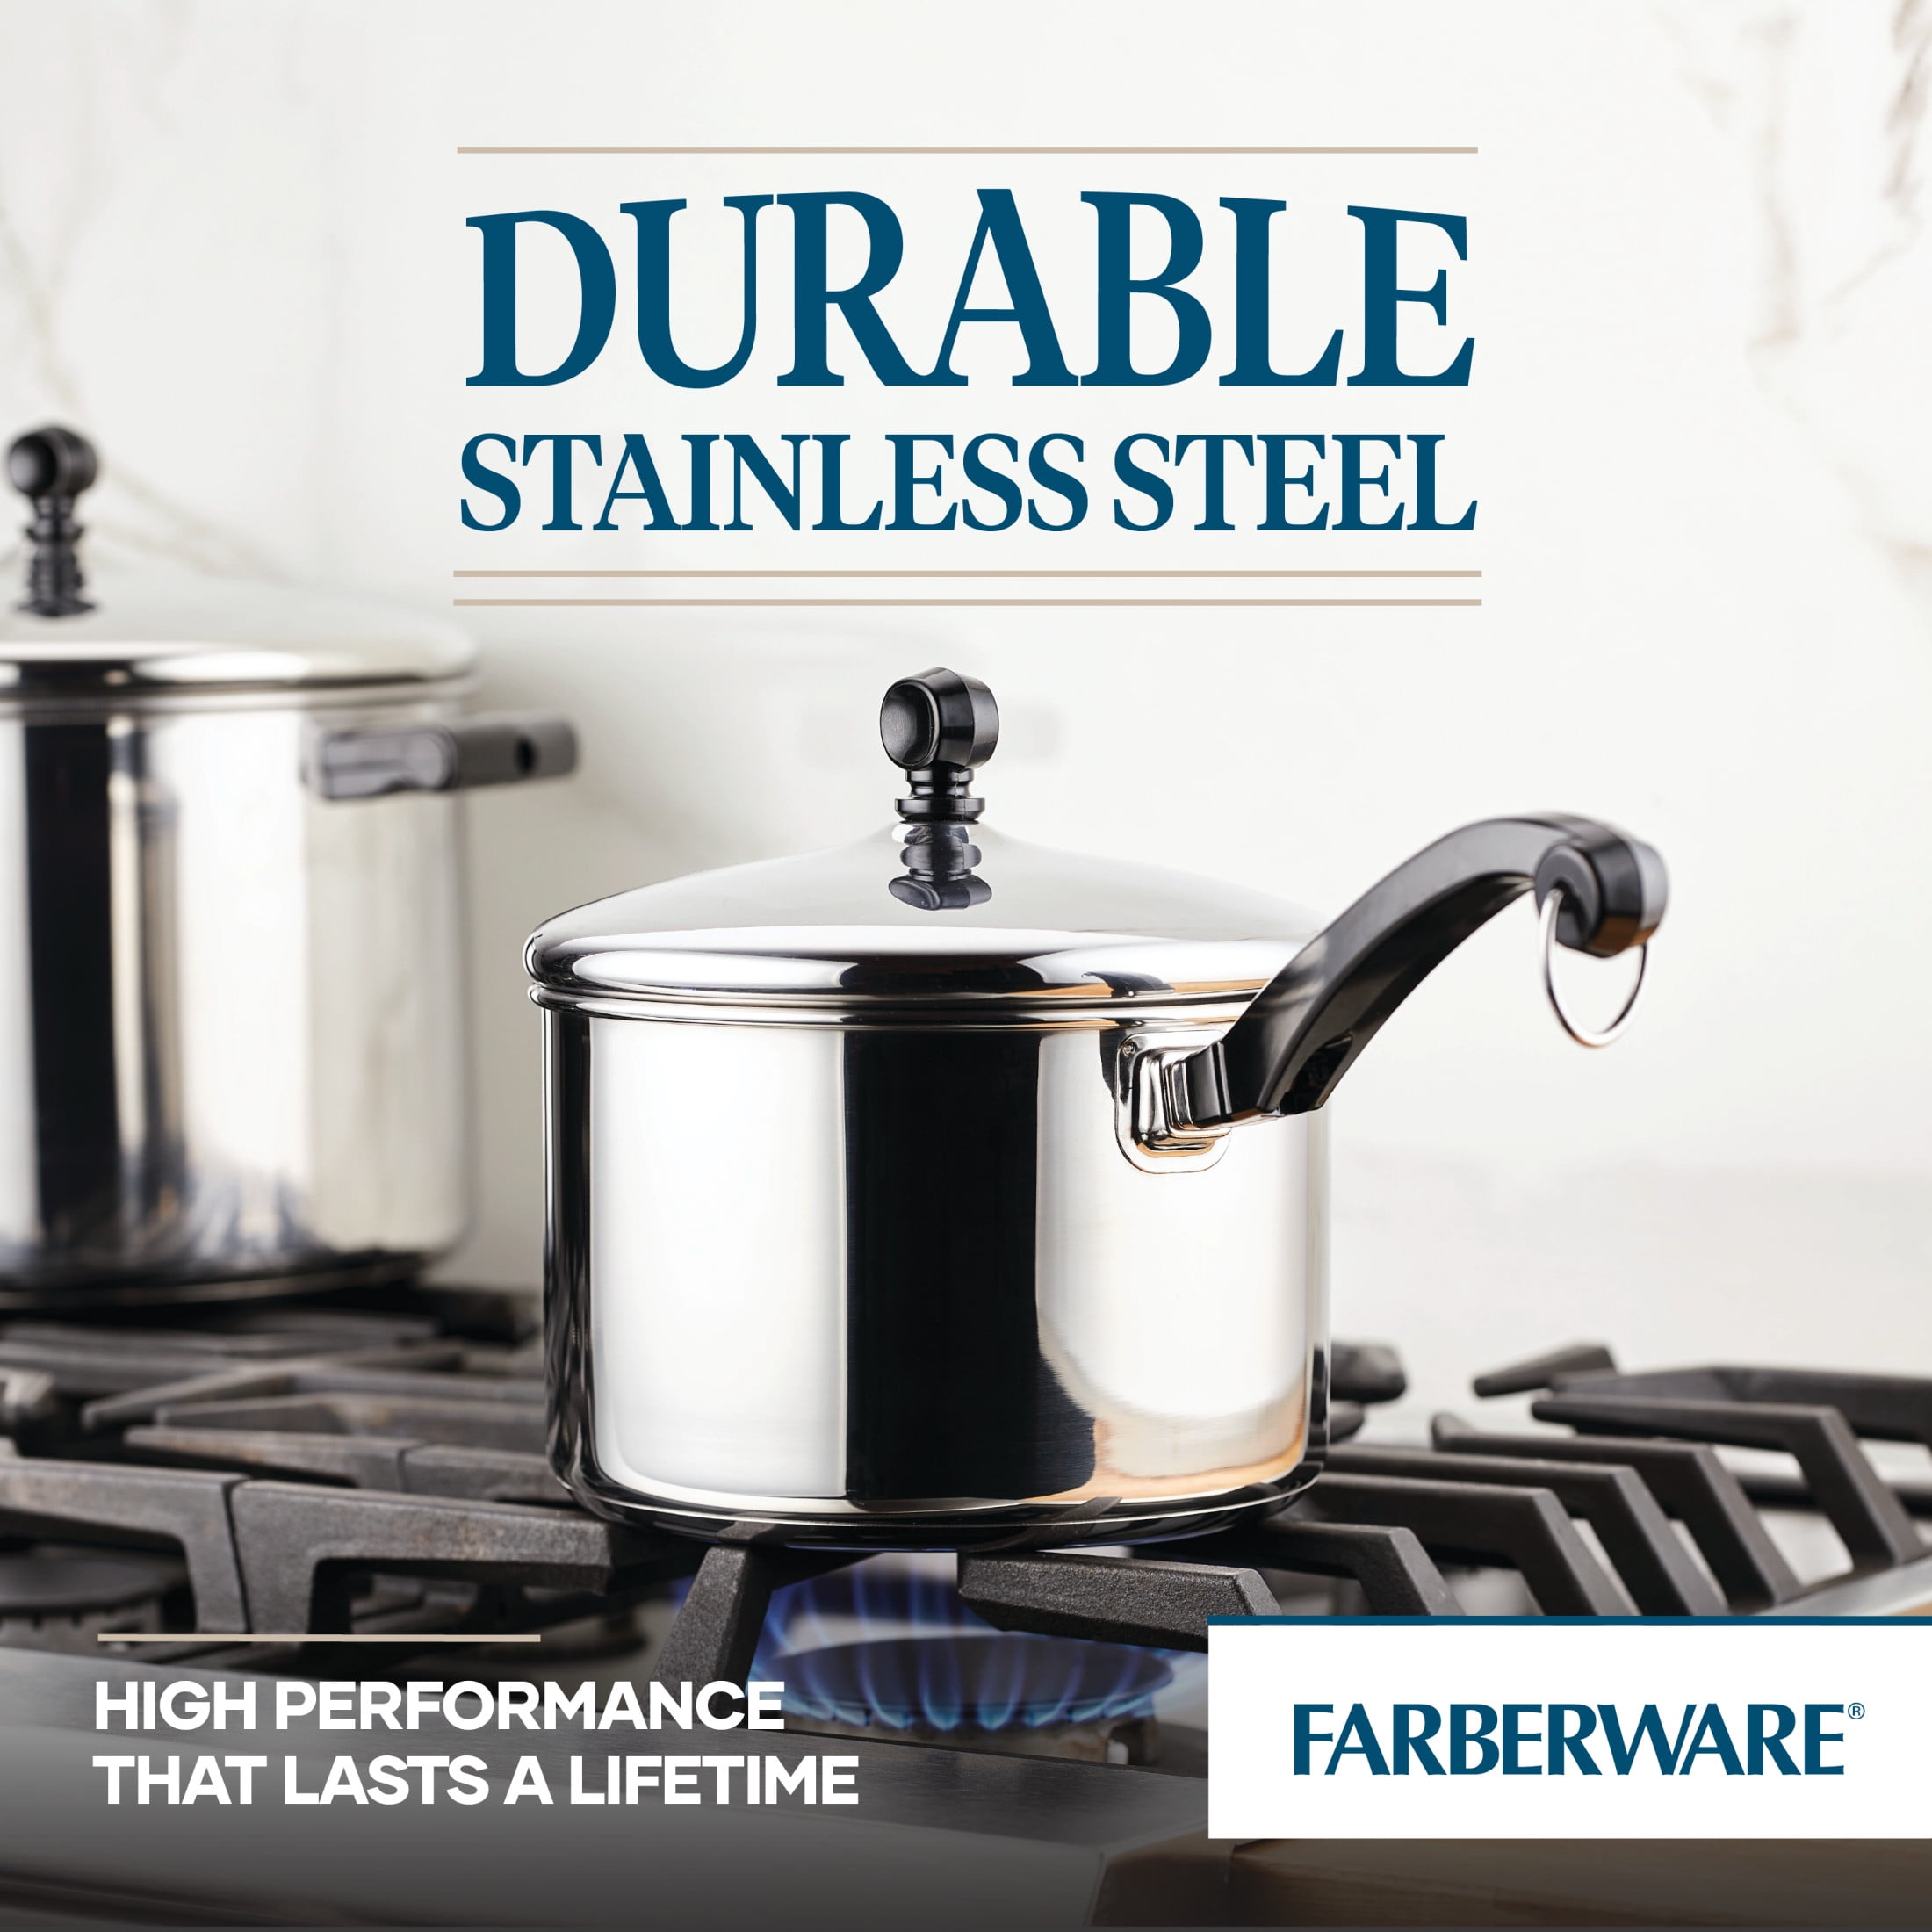 Faberware Millennium Stainless Steel 3 Quart Covered Saucier